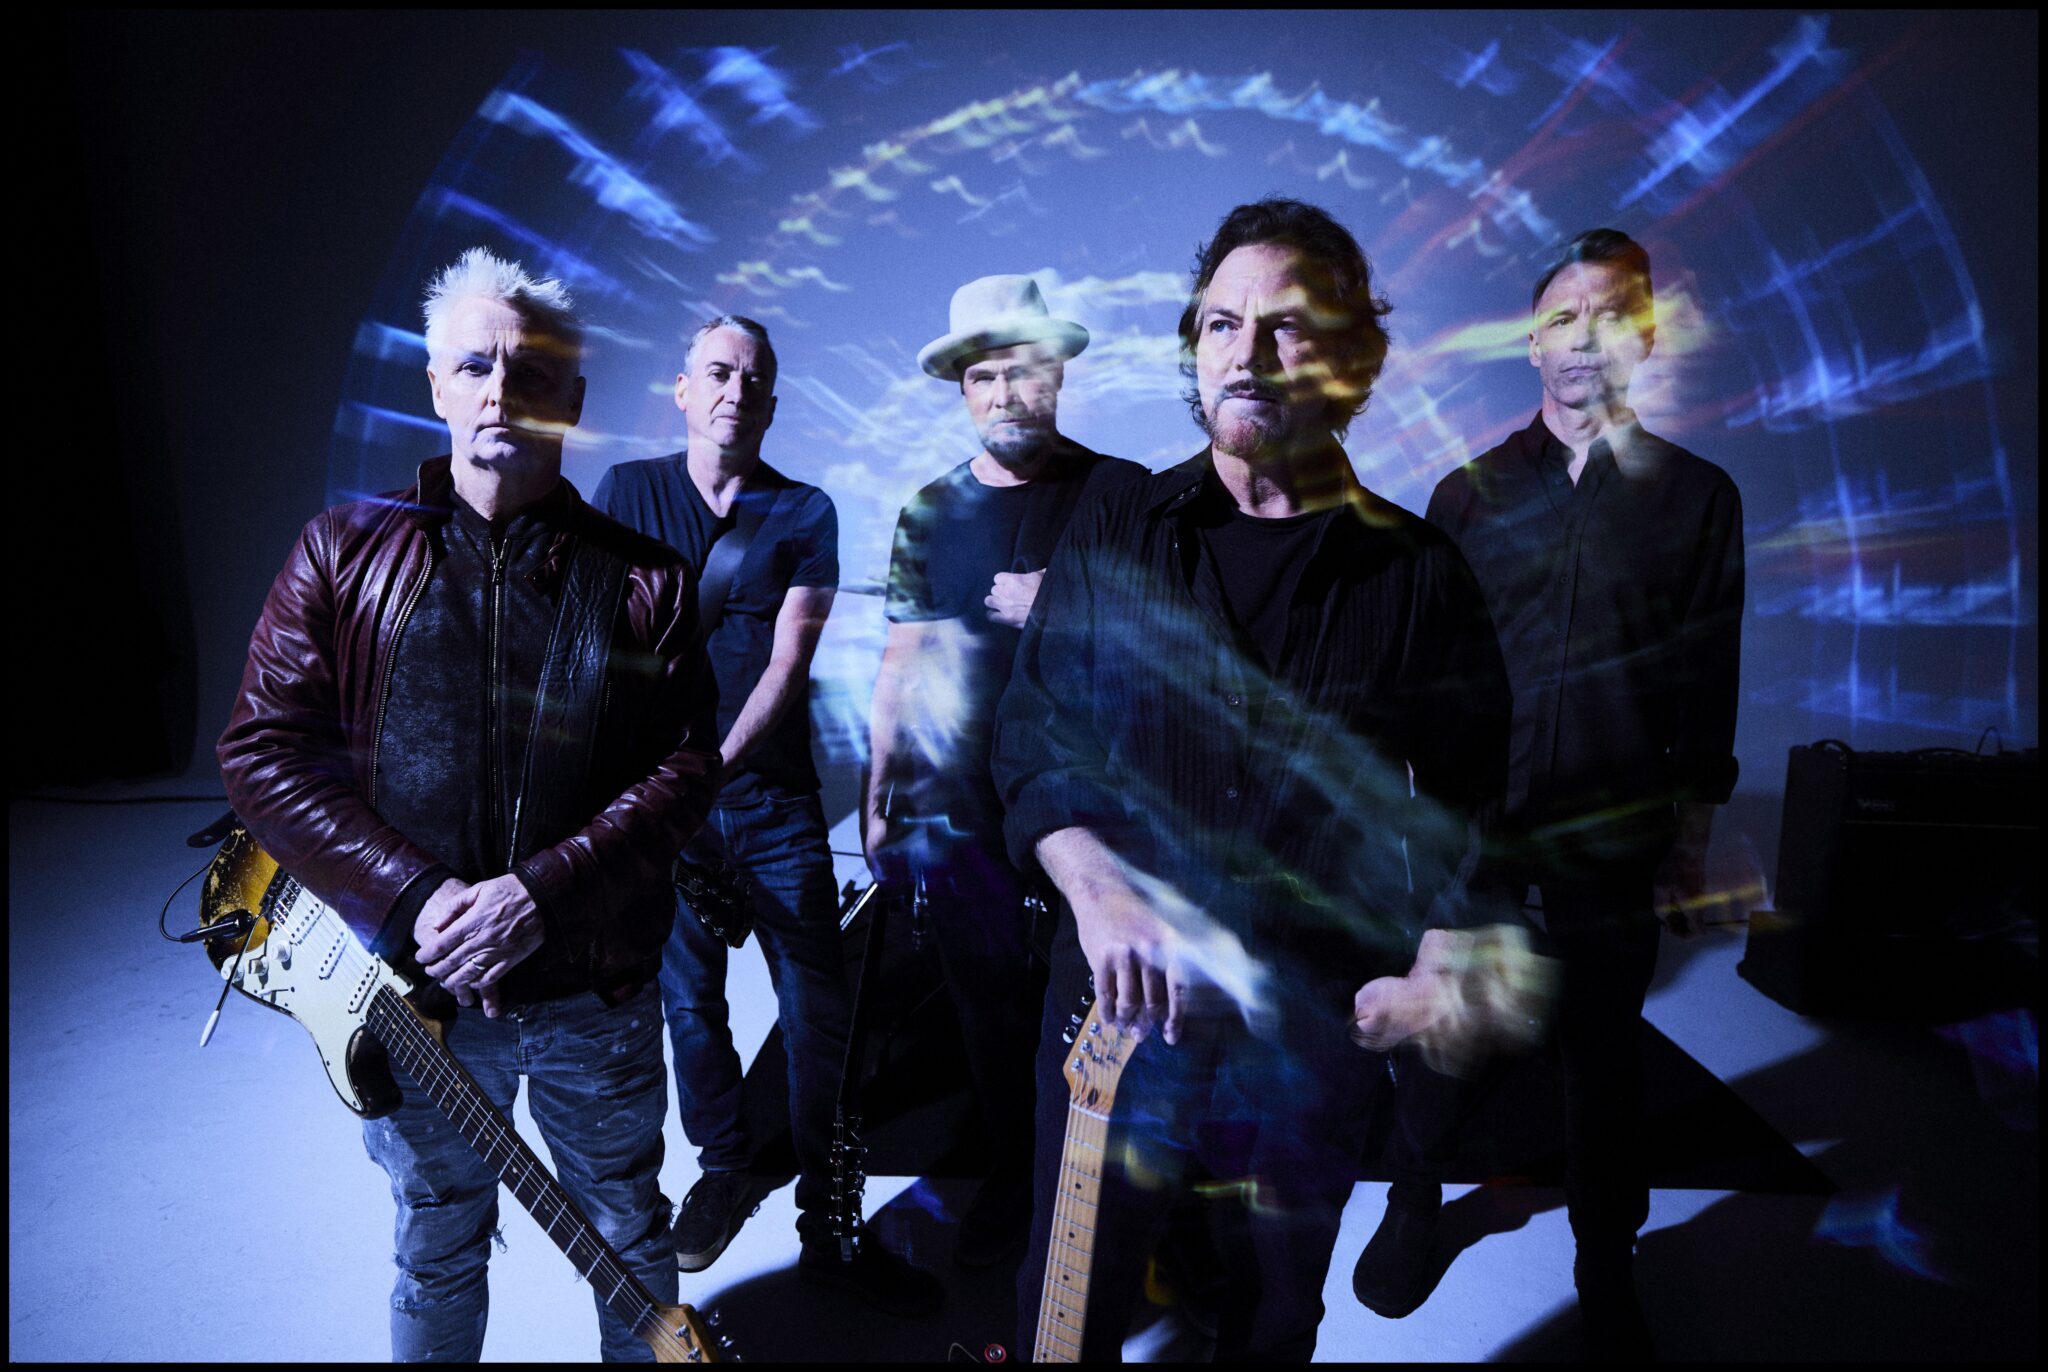 #
Rockmusik wie früher: Pearl Jam teilen neue Single „Running“